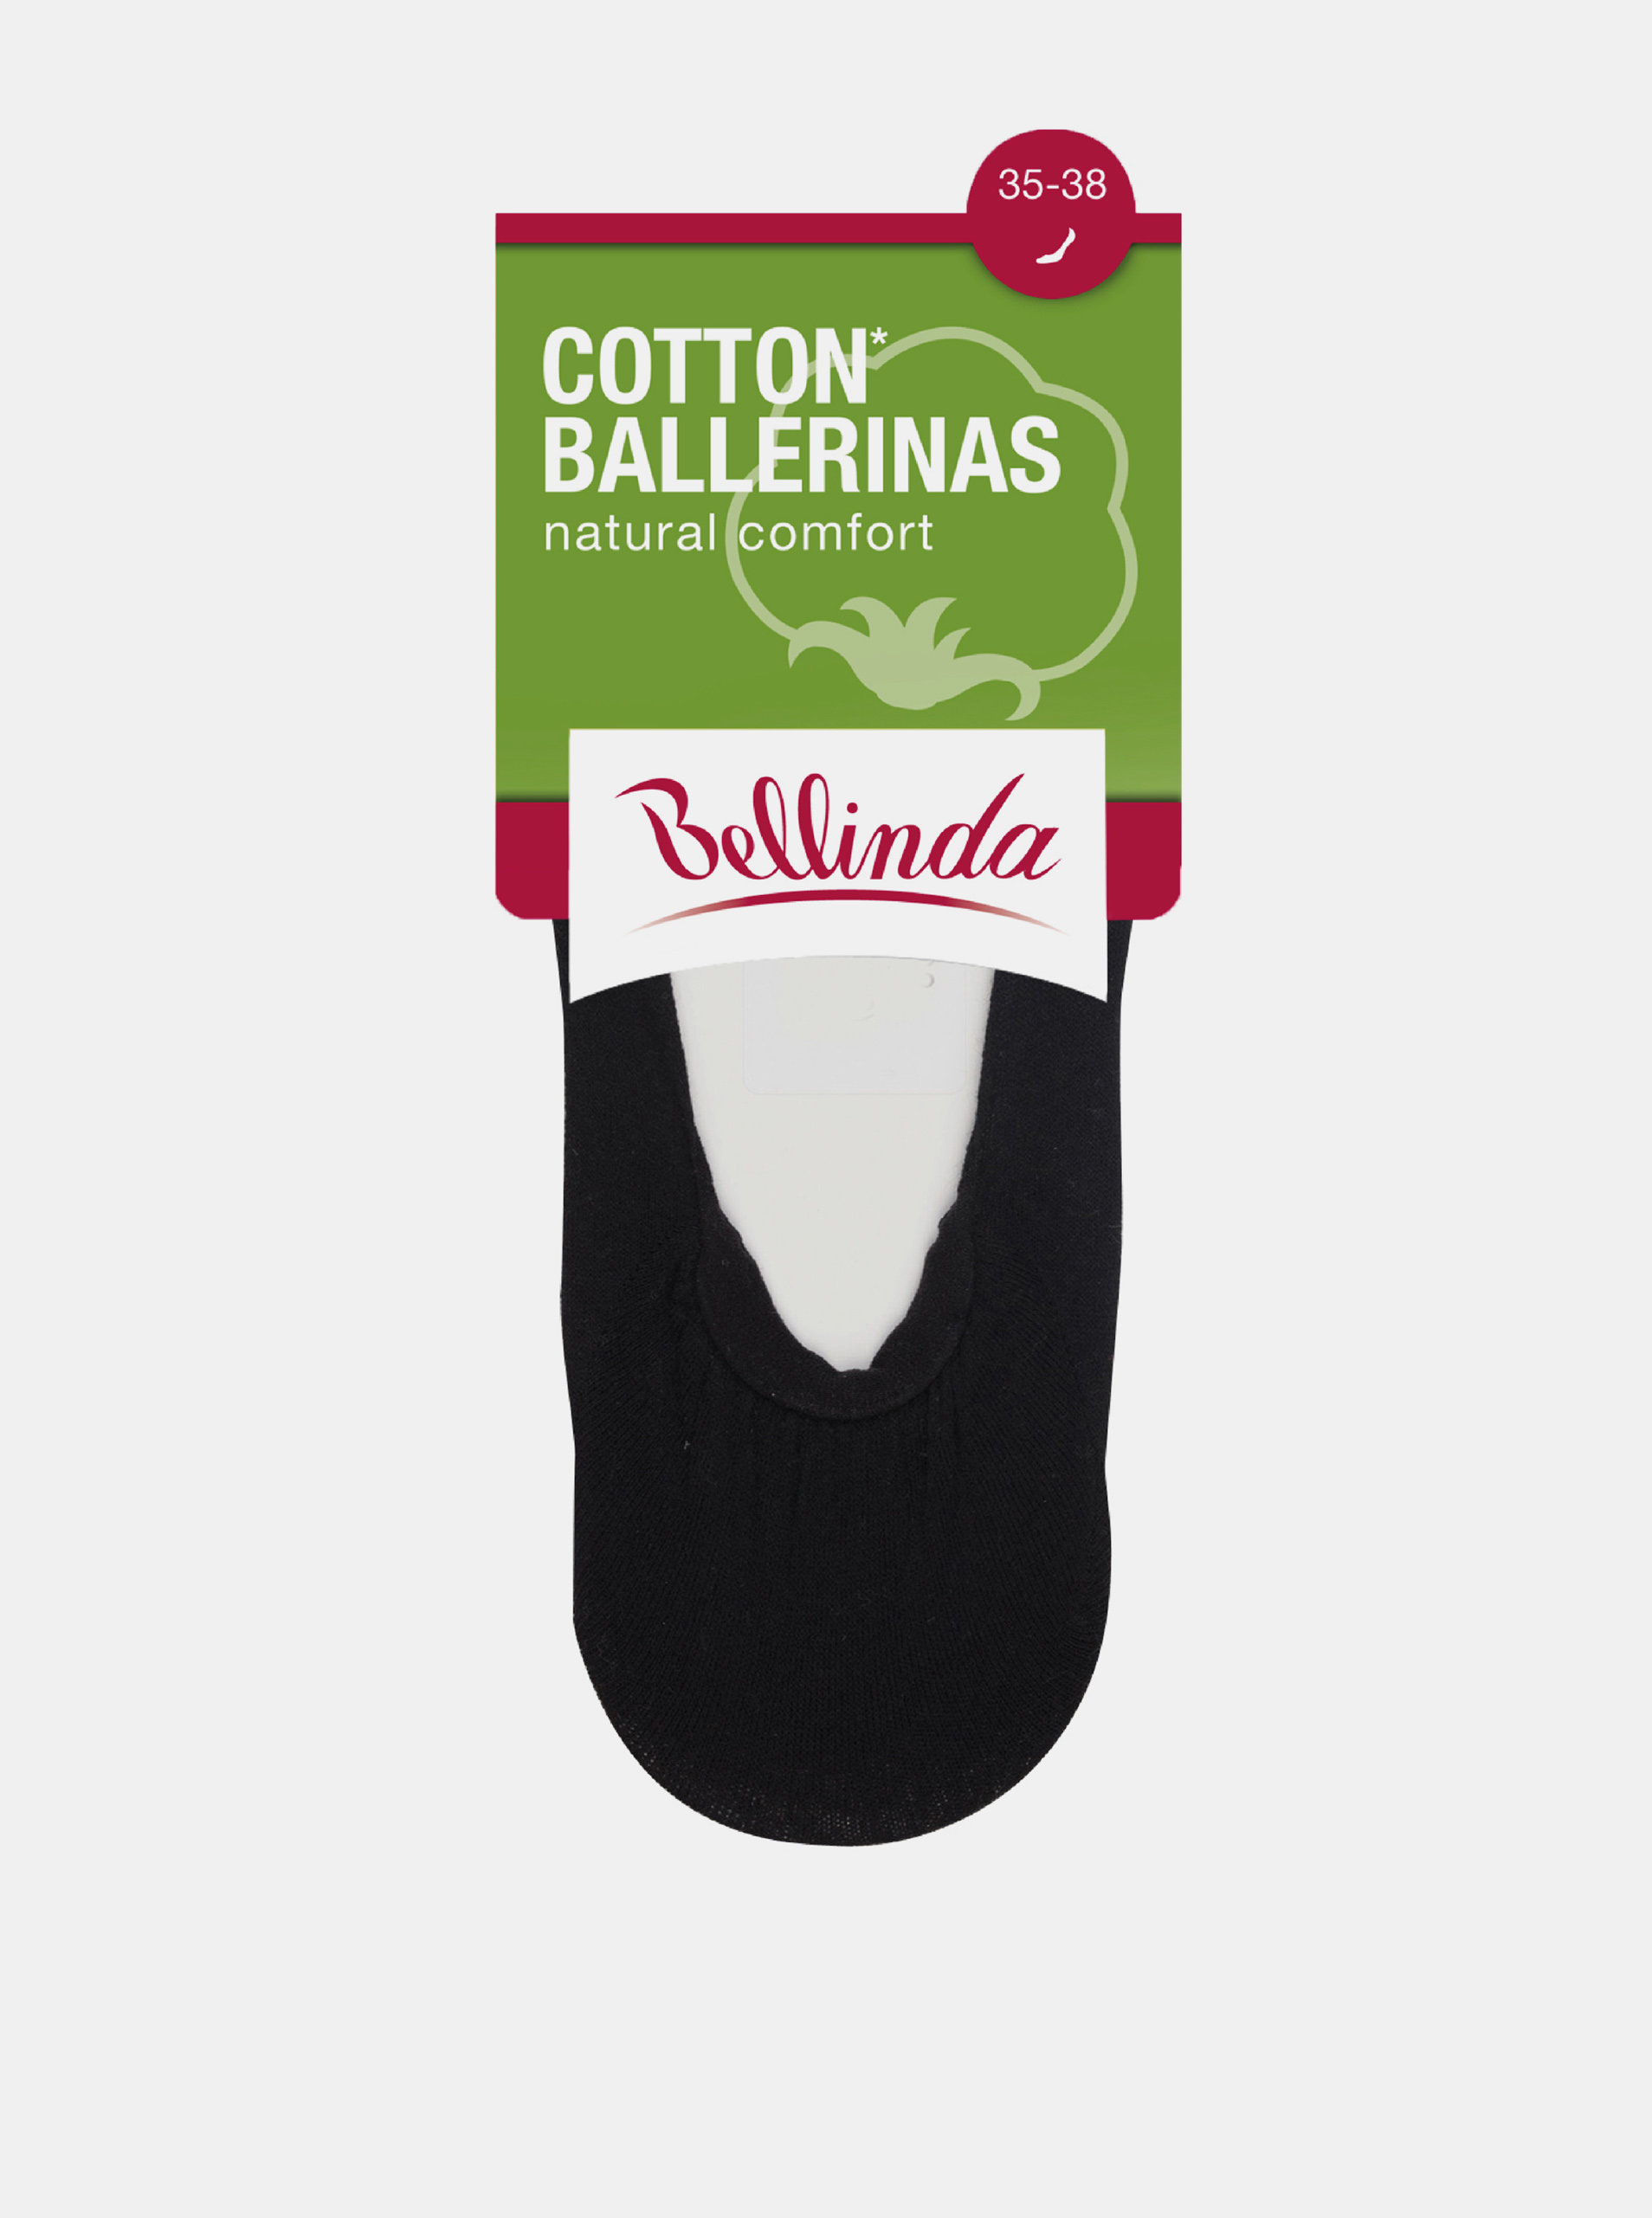 Fotografie Dámské bavlněné balerínky COTTON BALLERINAS - Dámské bavlněné ponožky vhodné do balerínek - amber